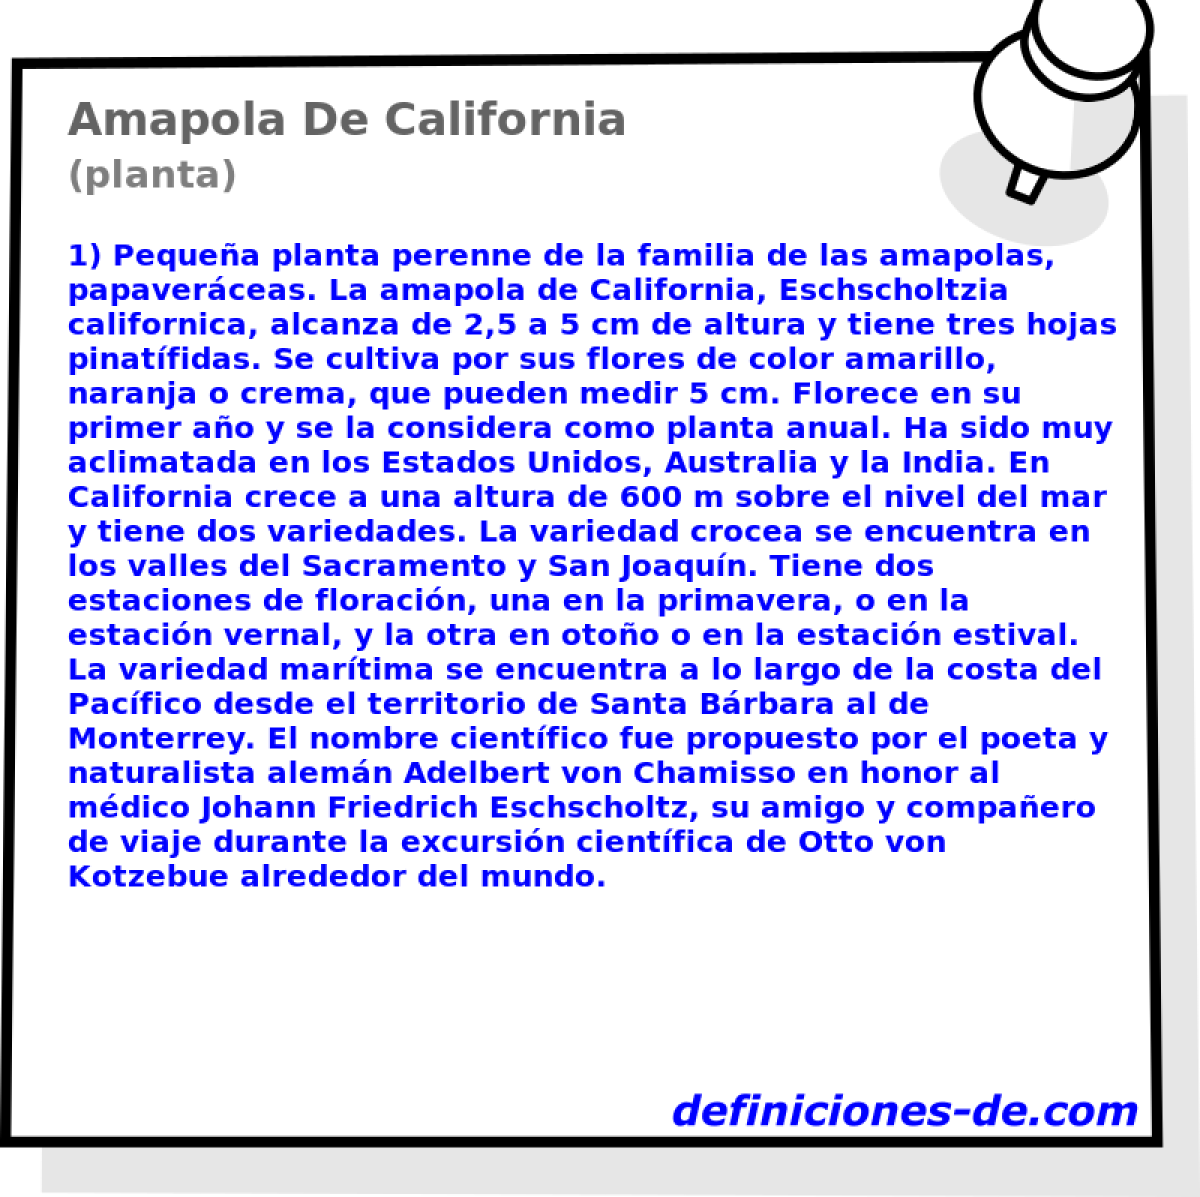 Amapola De California (planta)